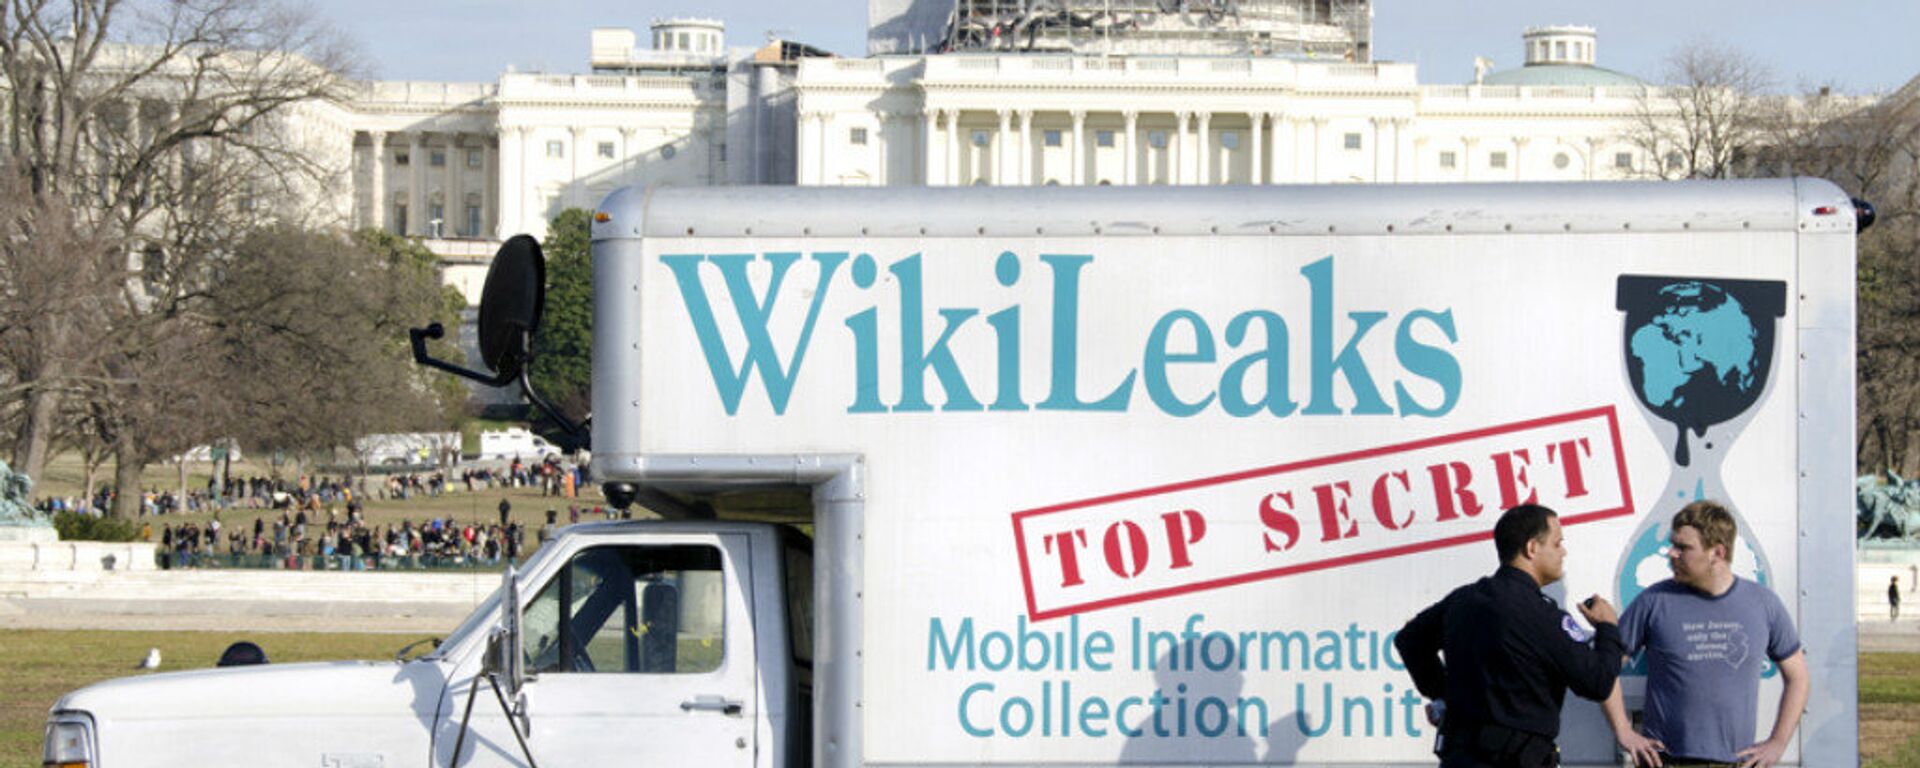 Wikileaks Van - Sputnik International, 1920, 23.02.2017